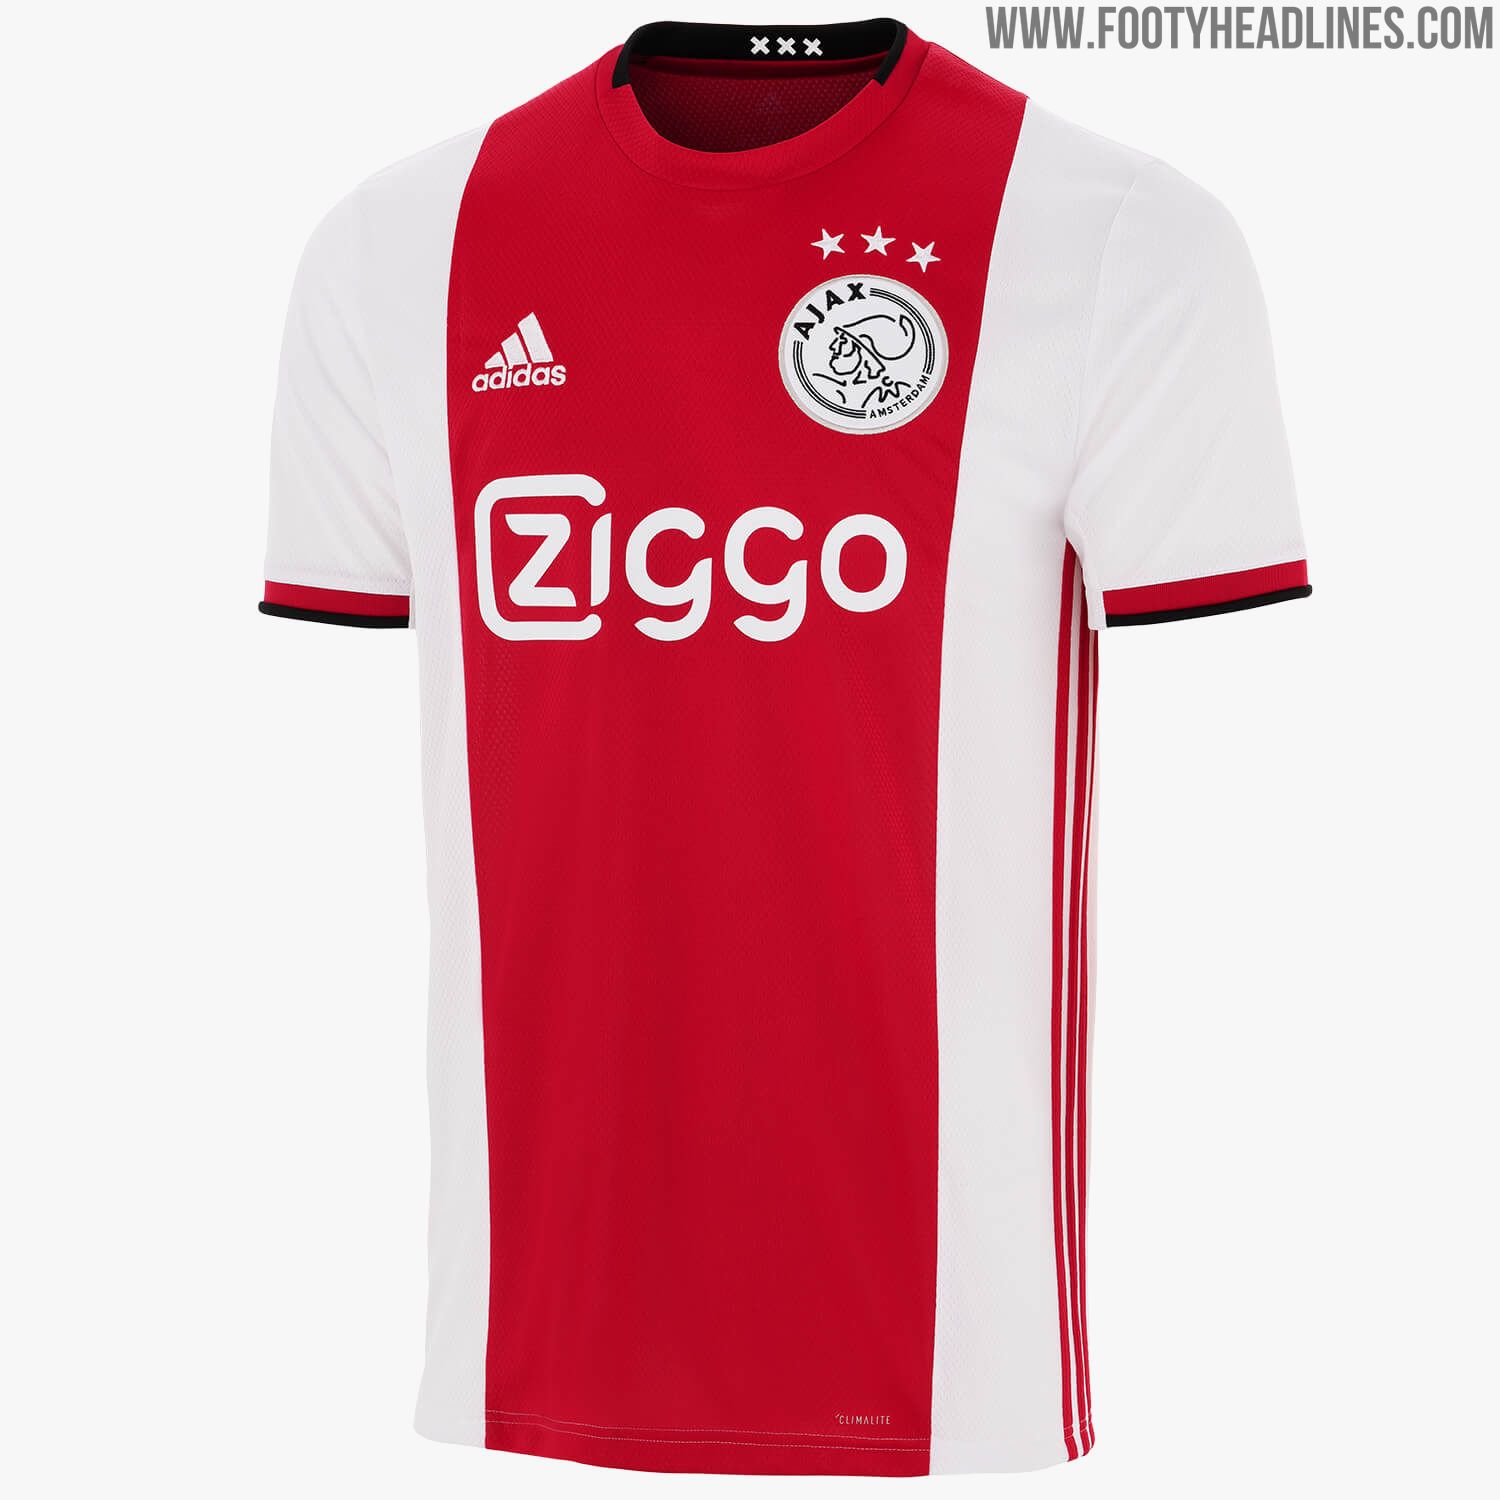 welvaart Trechter webspin Geweldig Ajax 19-20 Home Kit Released - Footy Headlines